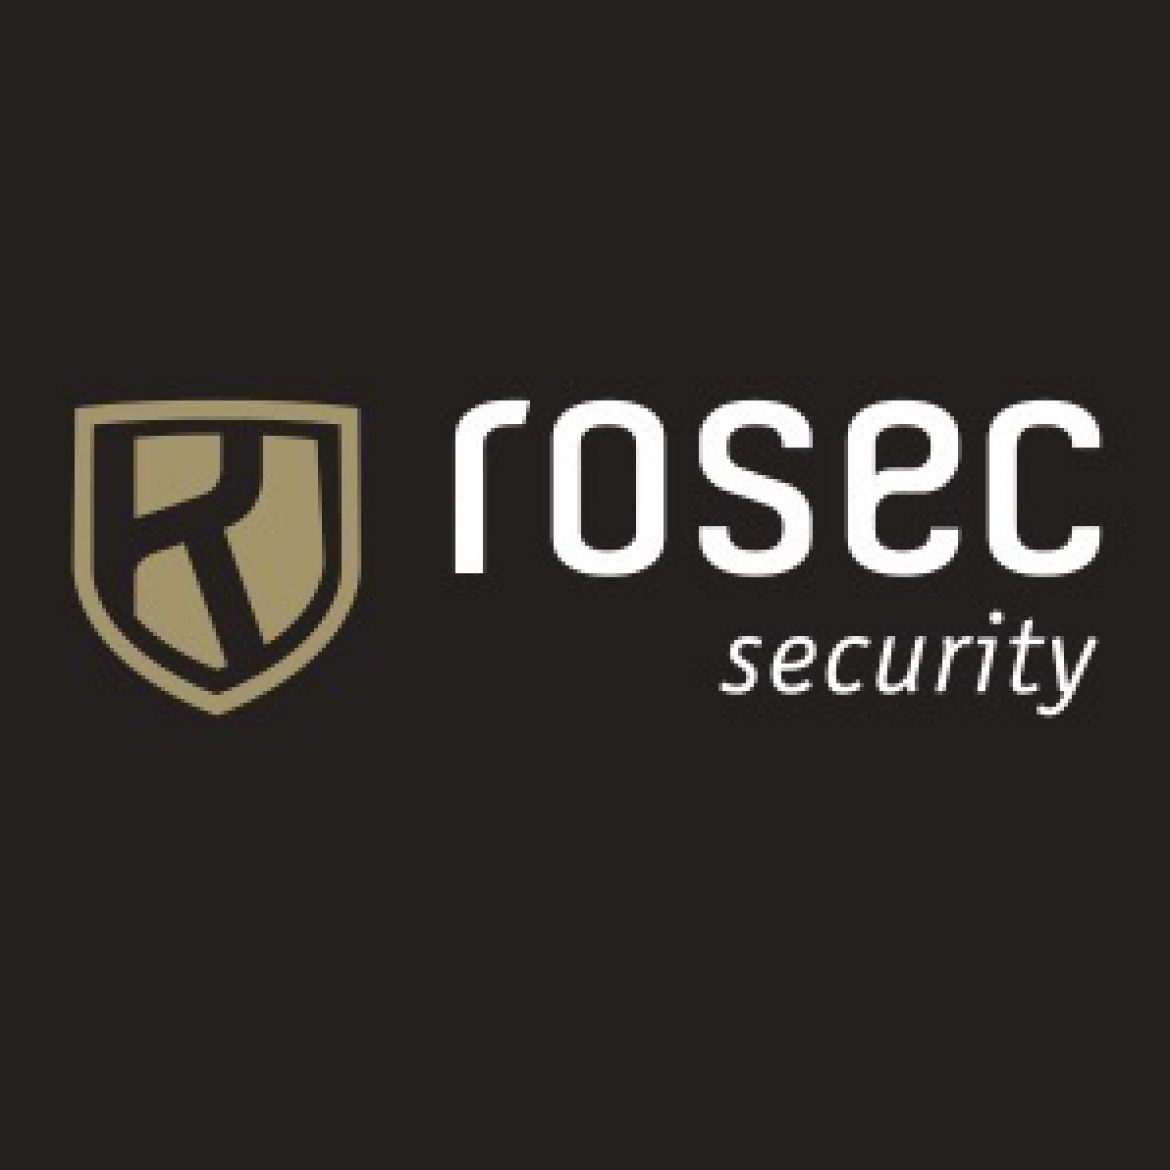 Rosec Security